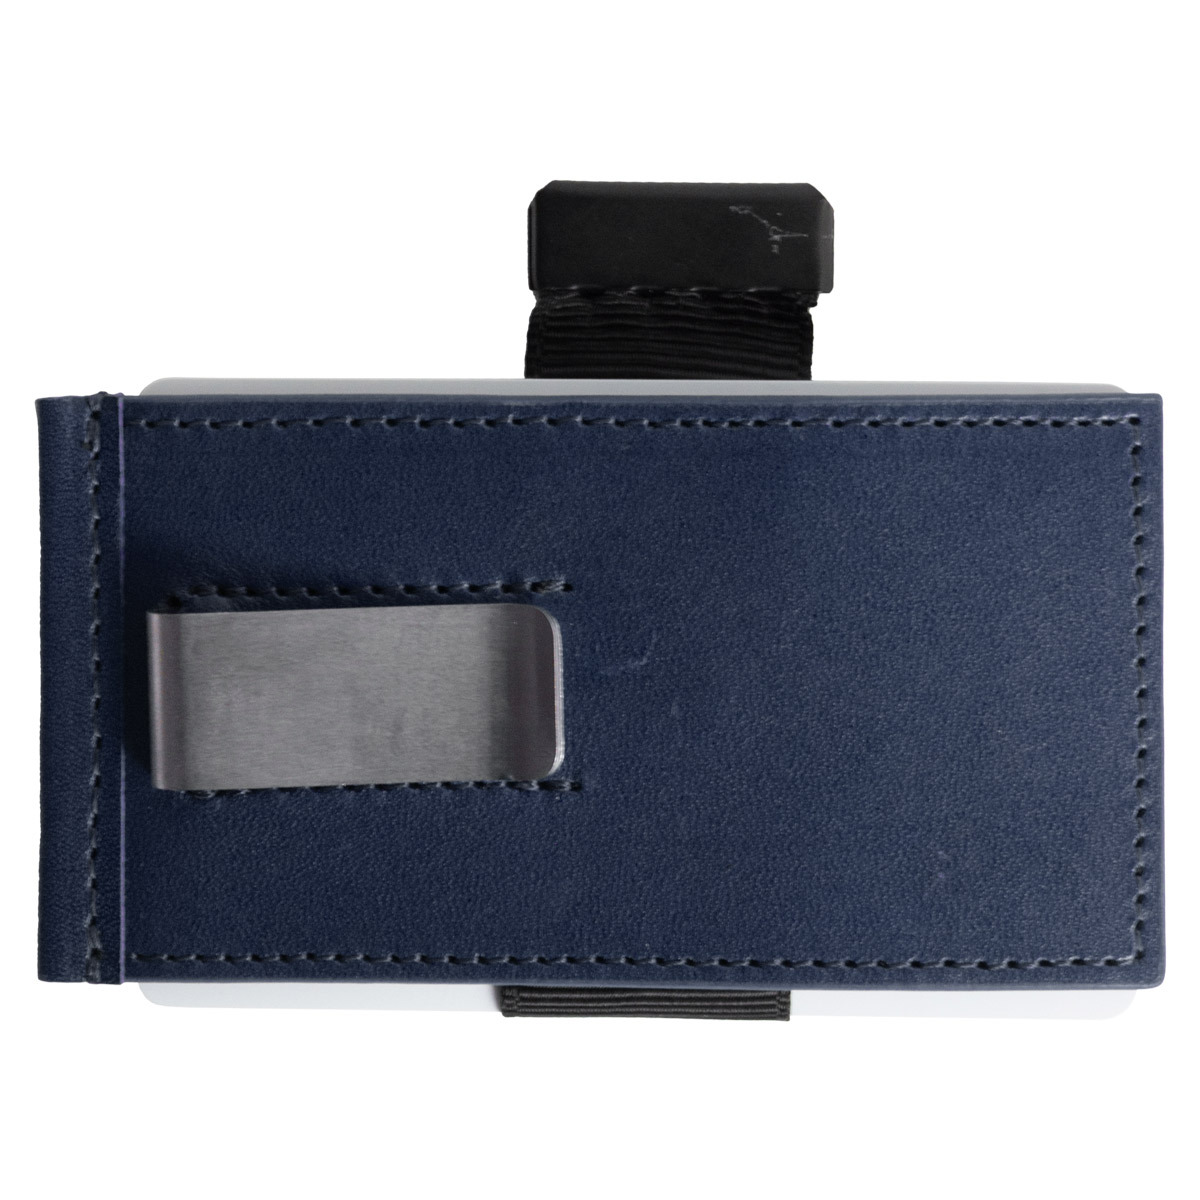 マネークリップ 革 本革 メンズ ブランド カード カードケース スリム イタリアンレザー 極薄 極小 スマートウォレット カードホルダー 収納  コンパクト